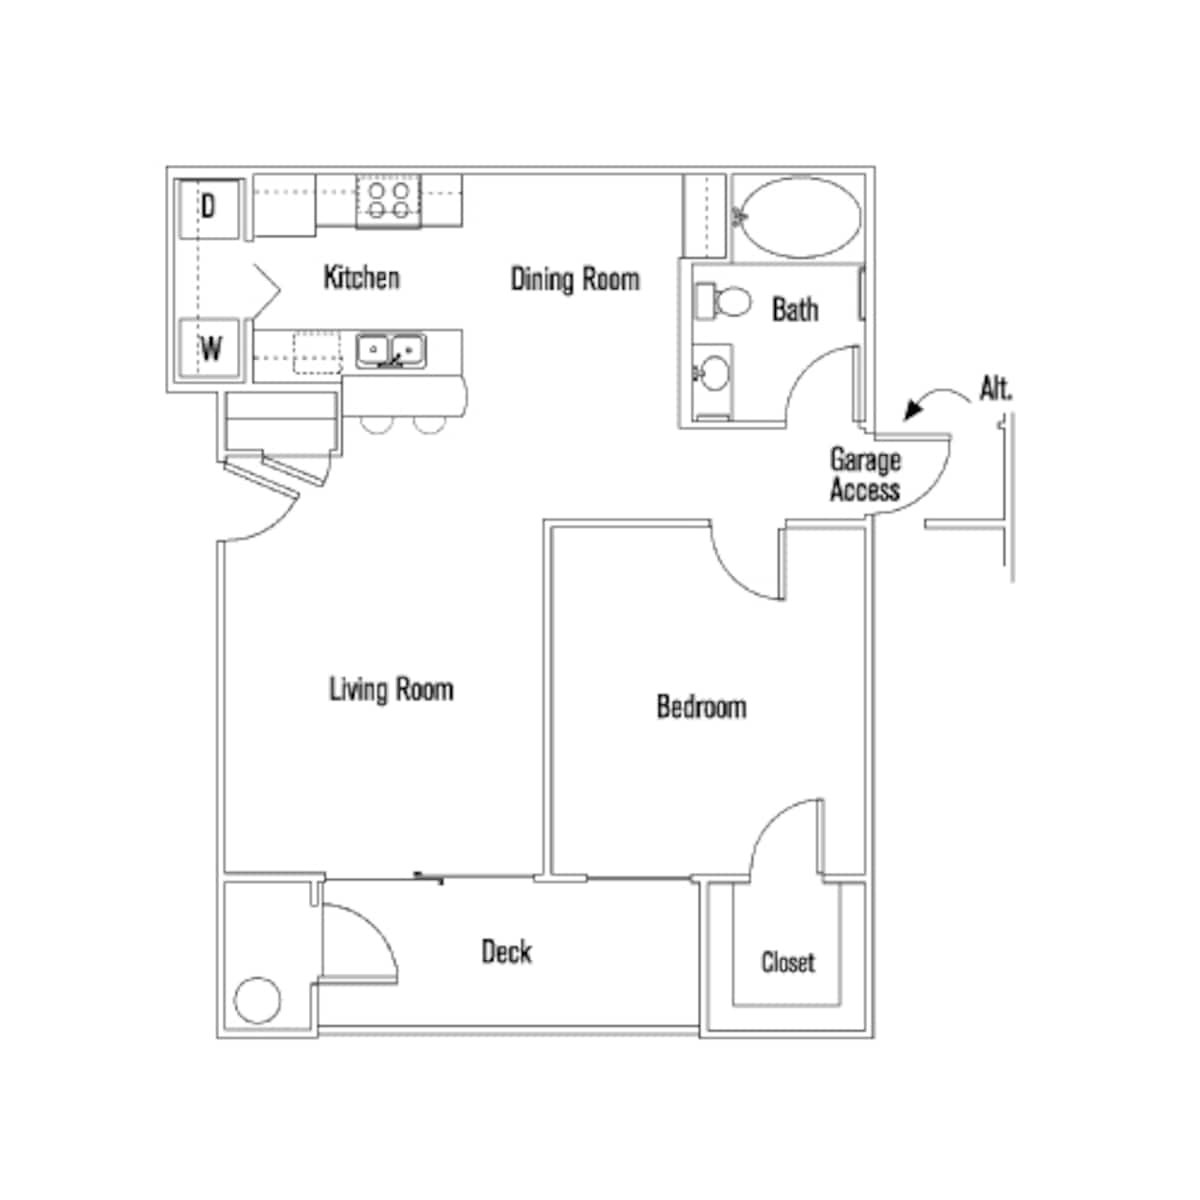 Floorplan diagram for Hayden, showing 1 bedroom